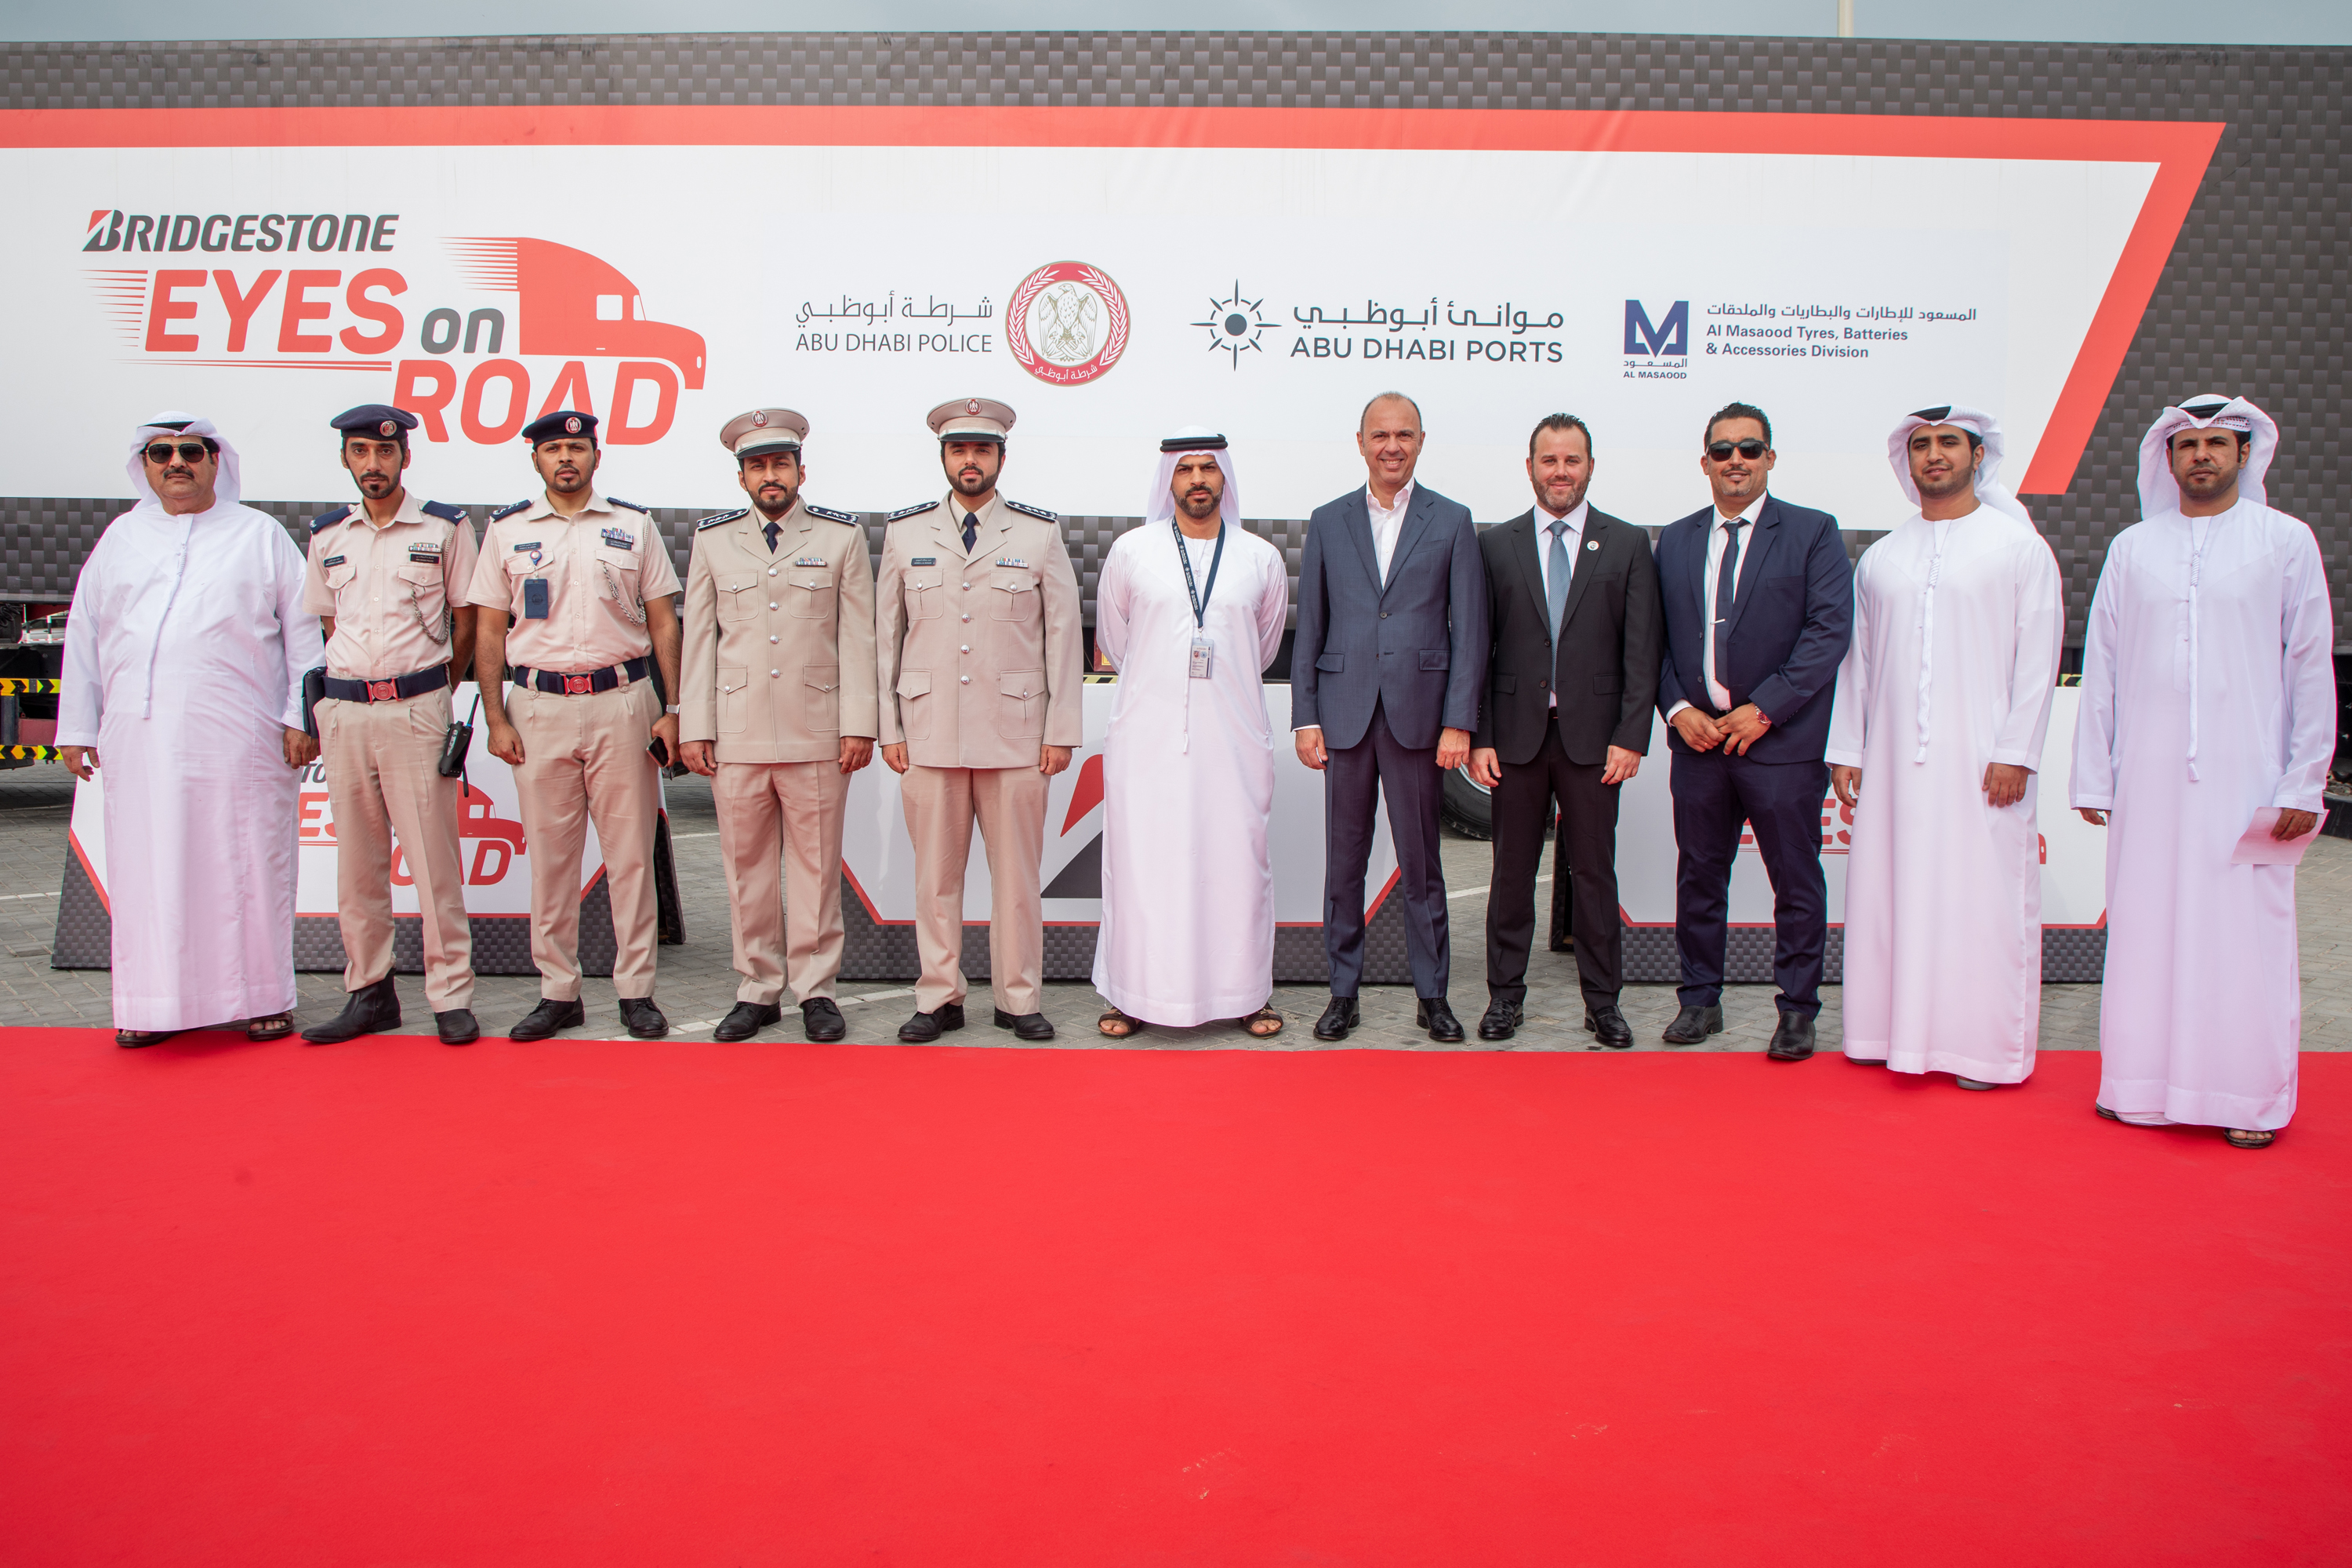 المسعود تتعاون مع بريجستون لتعزيز صحة وسلامة سائقي الشاحنات في الإمارات بالتعاون مع هيئات حكومية